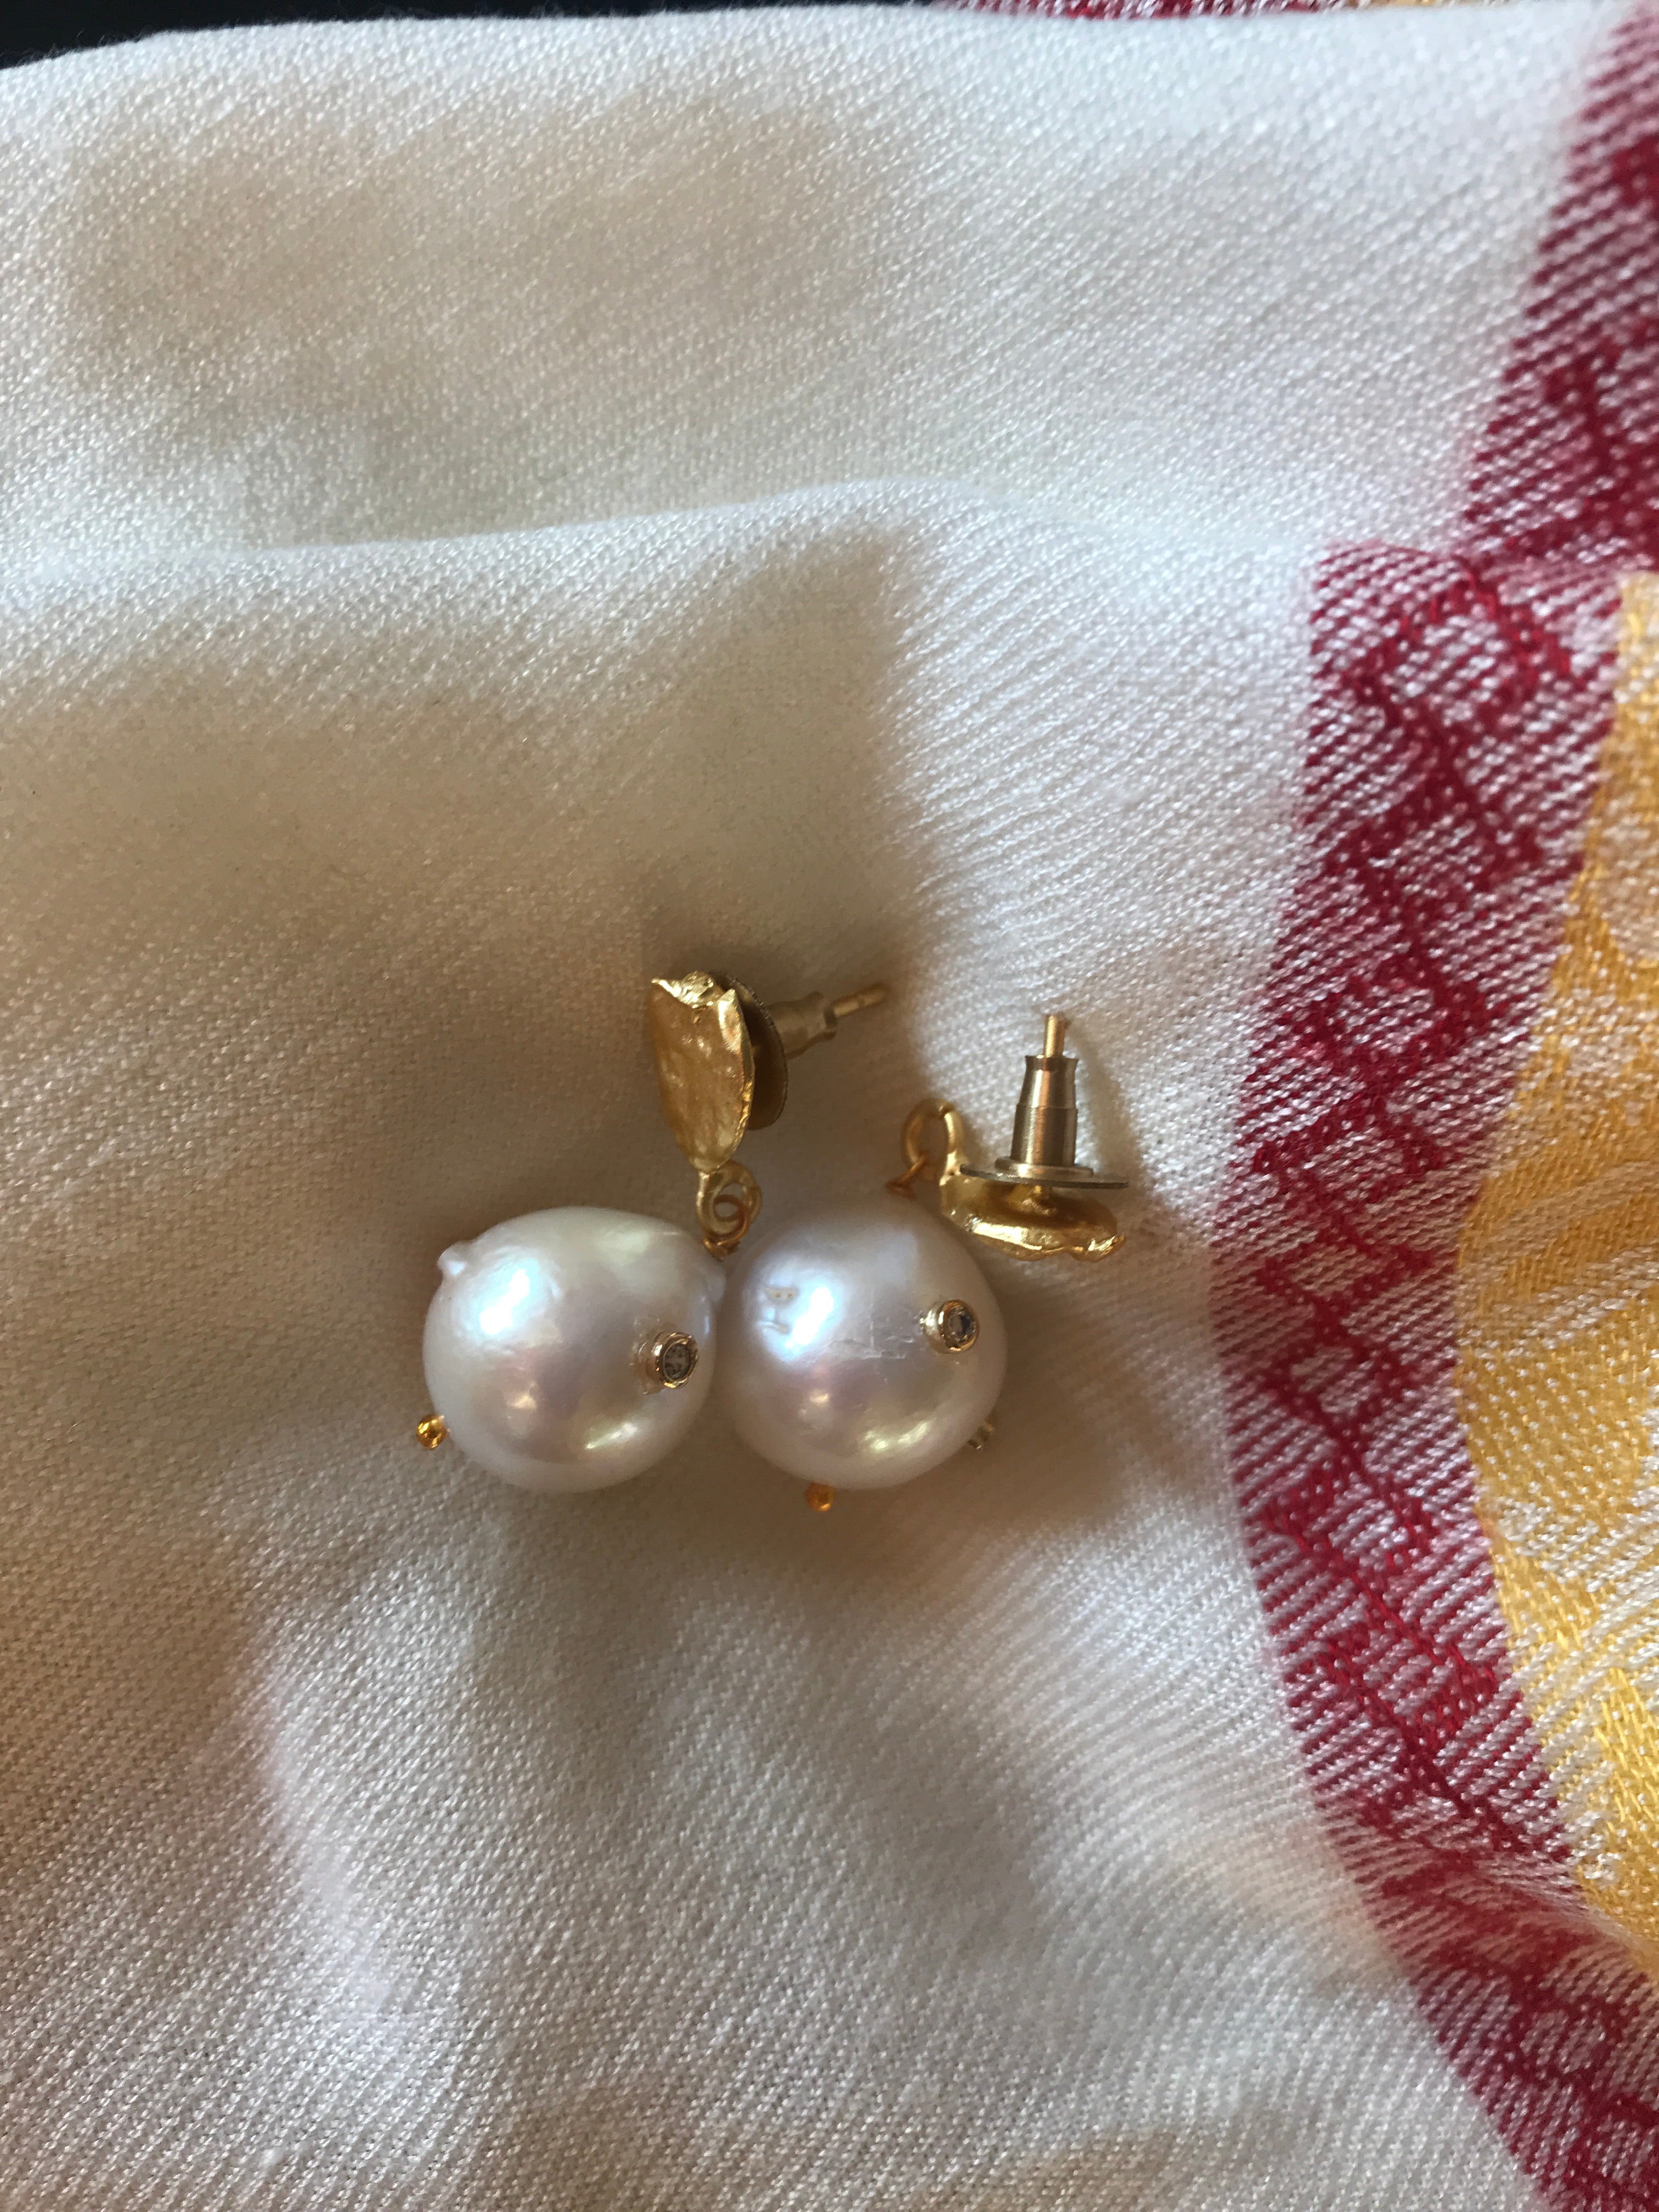 Number 4025: ANGELOS earrings and bracelet.